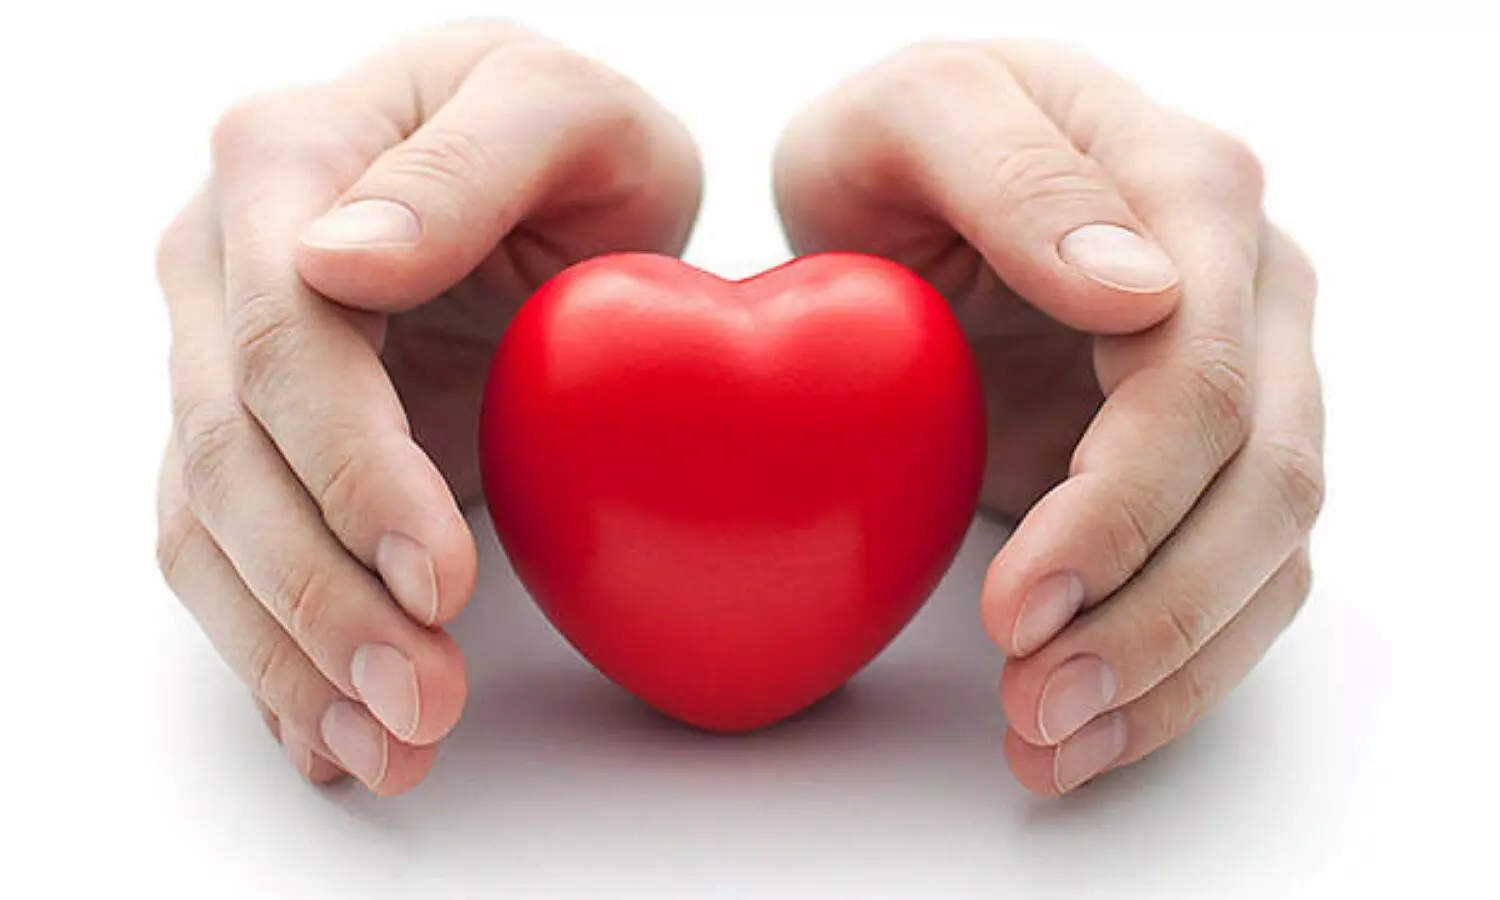 Heart Failure Awareness Month 2022